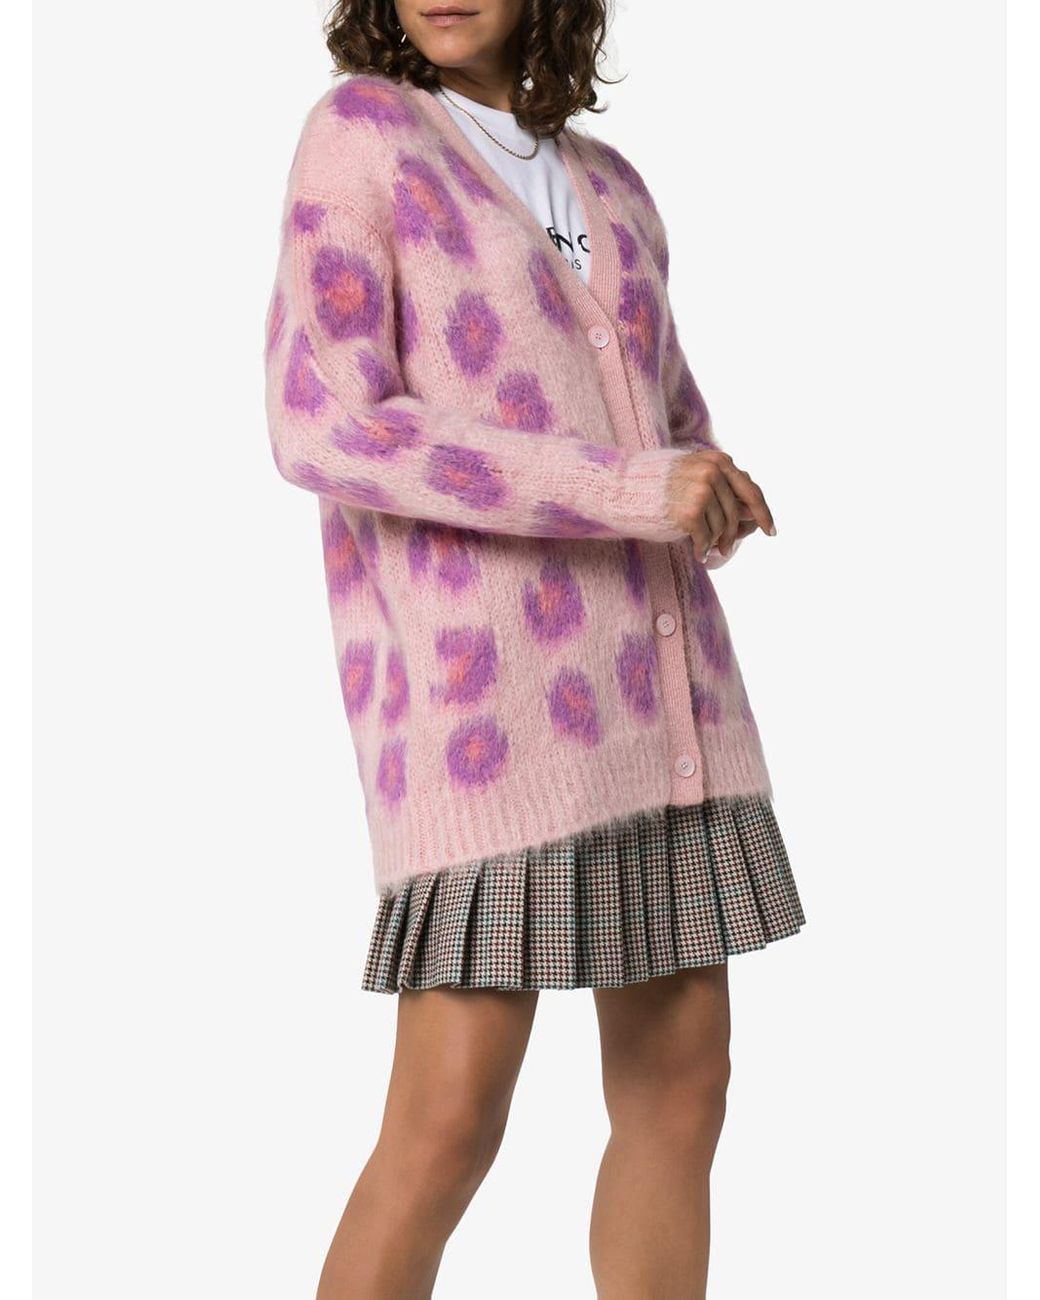 Miu Miu Leopard Print Knit Cardigan in Pink | Lyst